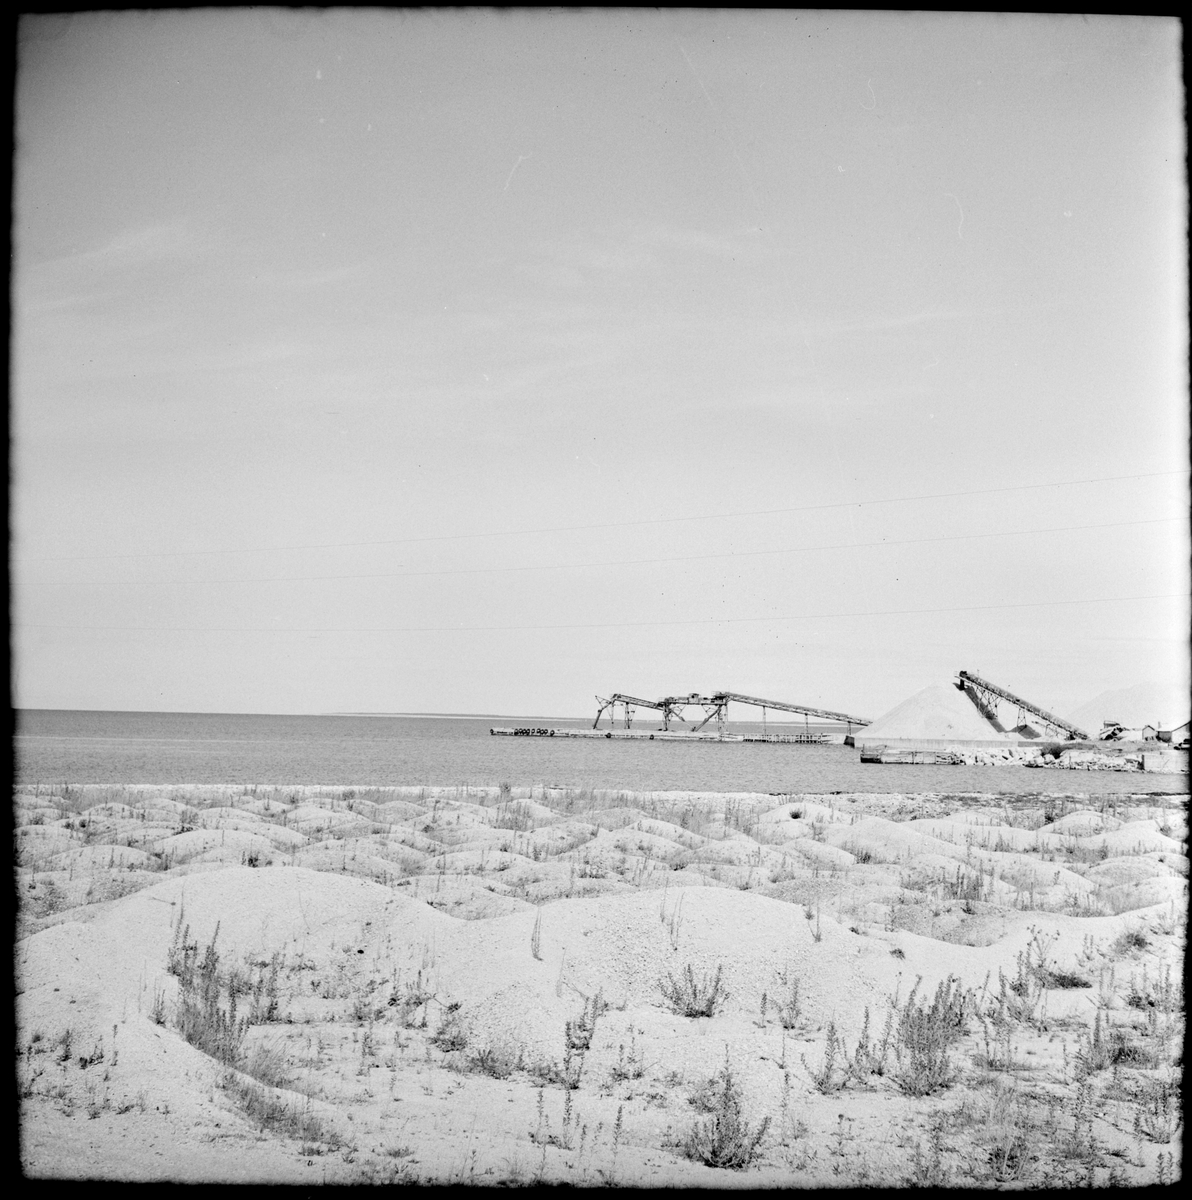 Troligen strandkanten vid Ar, en ort i Fleringe socken på Gotlands västra kust.